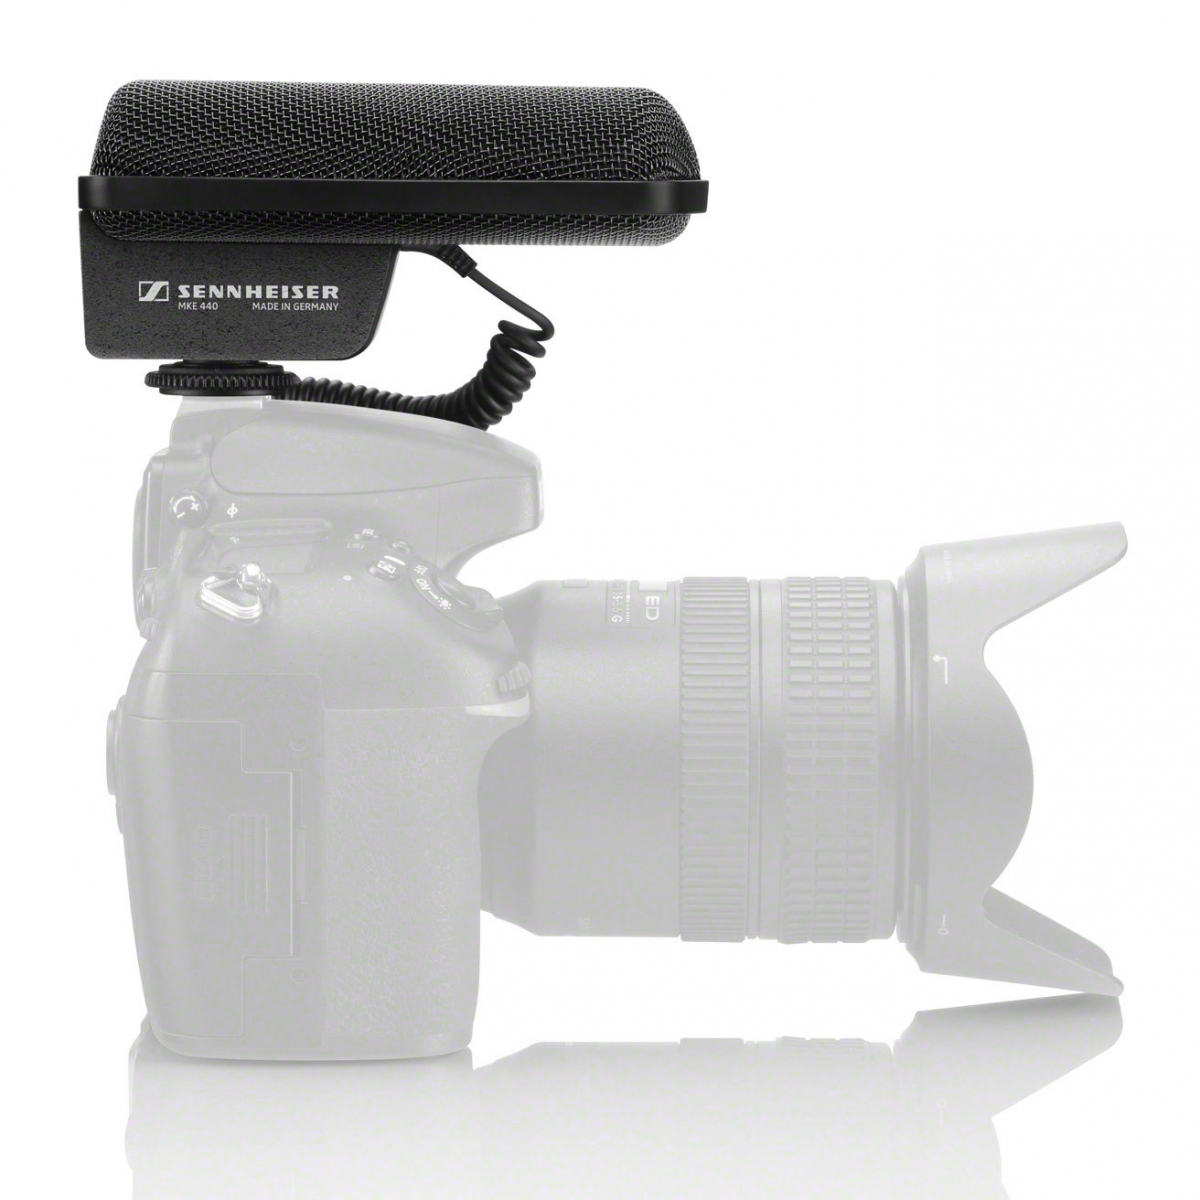 SENNHEISER 506258 MKE440 compacte stereo microfoon met camerabevestiging in shockmount